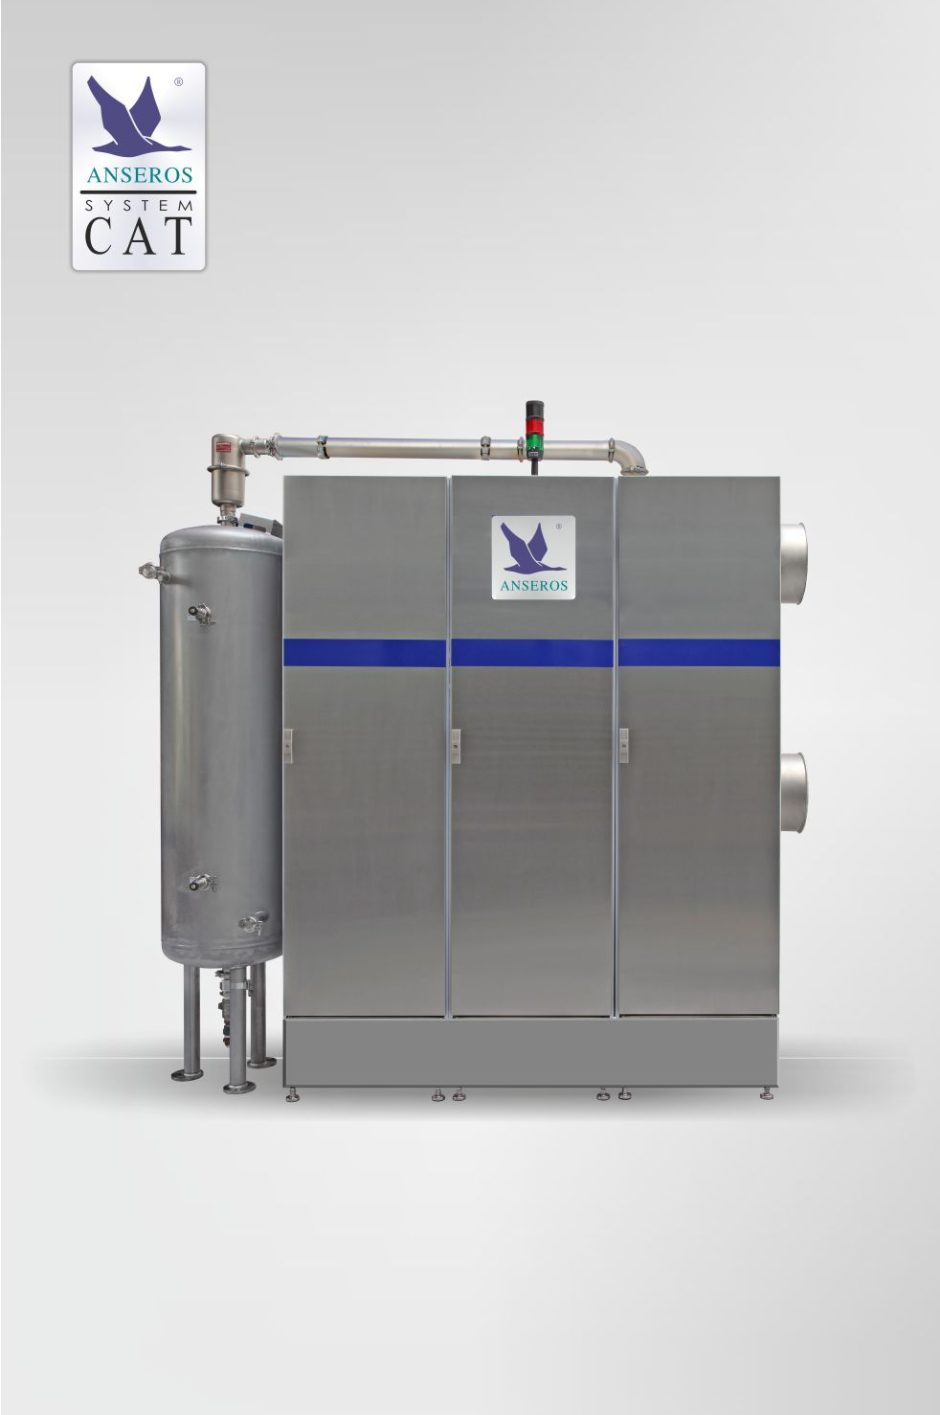 off-gas treatment plant CAT-CL-100